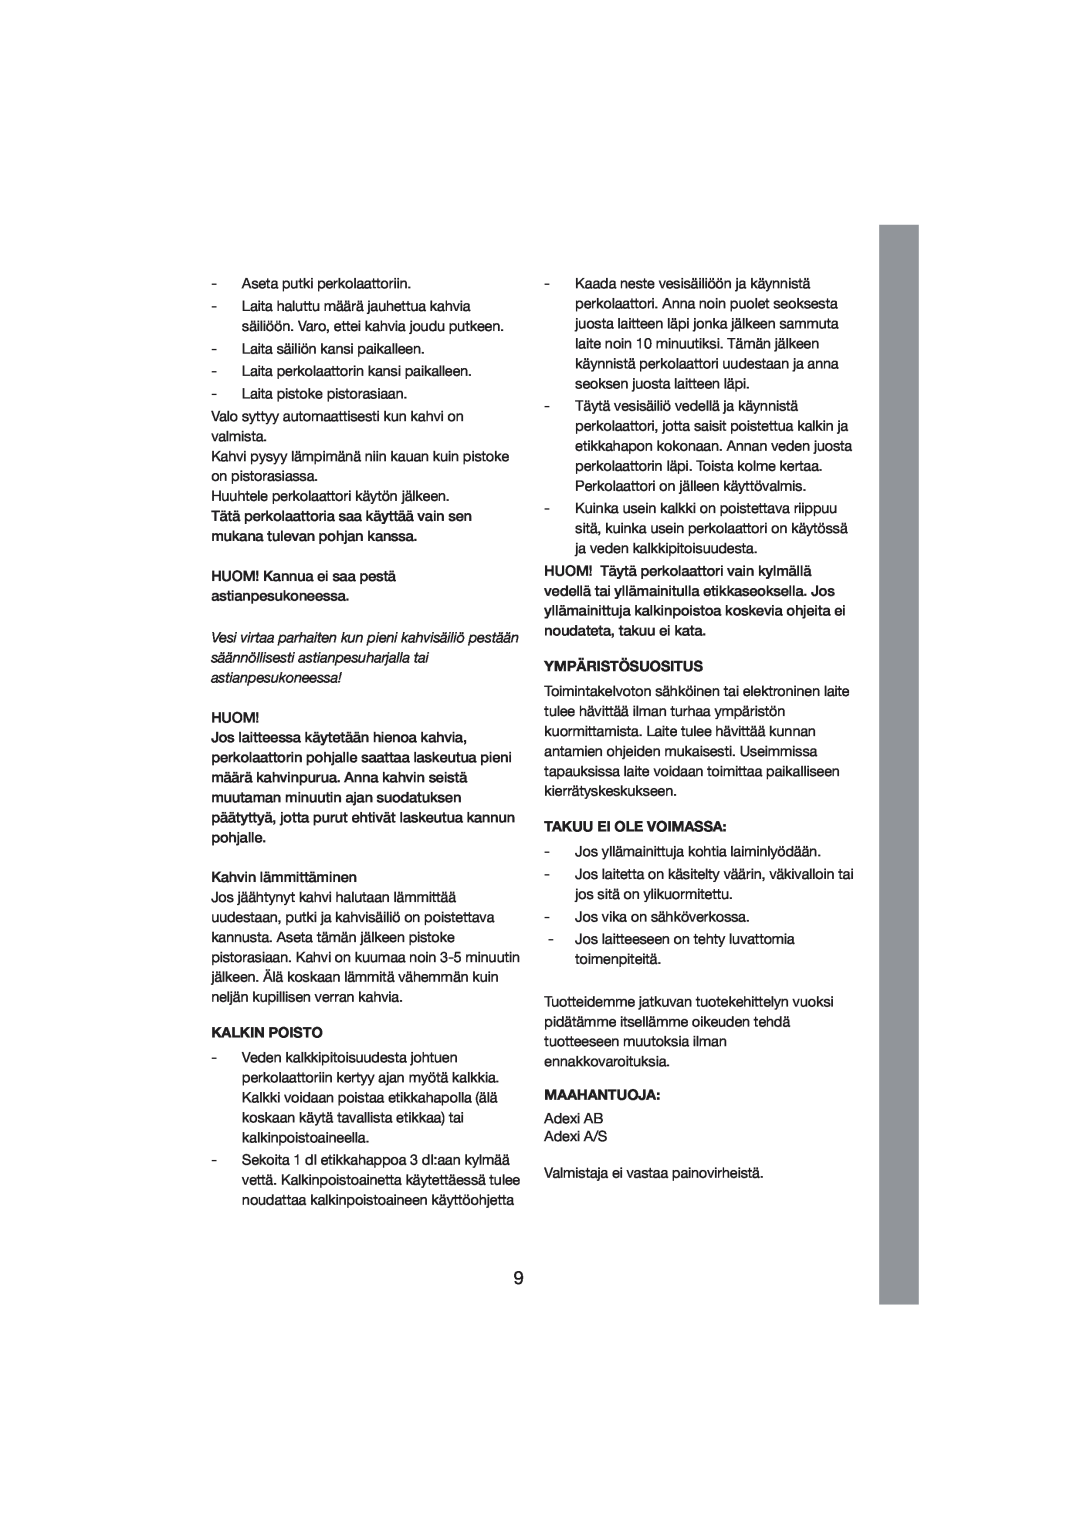 Exido 245-011/012 manual Kalkin Poisto, Ympäristösuositus, Takuu Ei Ole Voimassa, Maahantuoja 